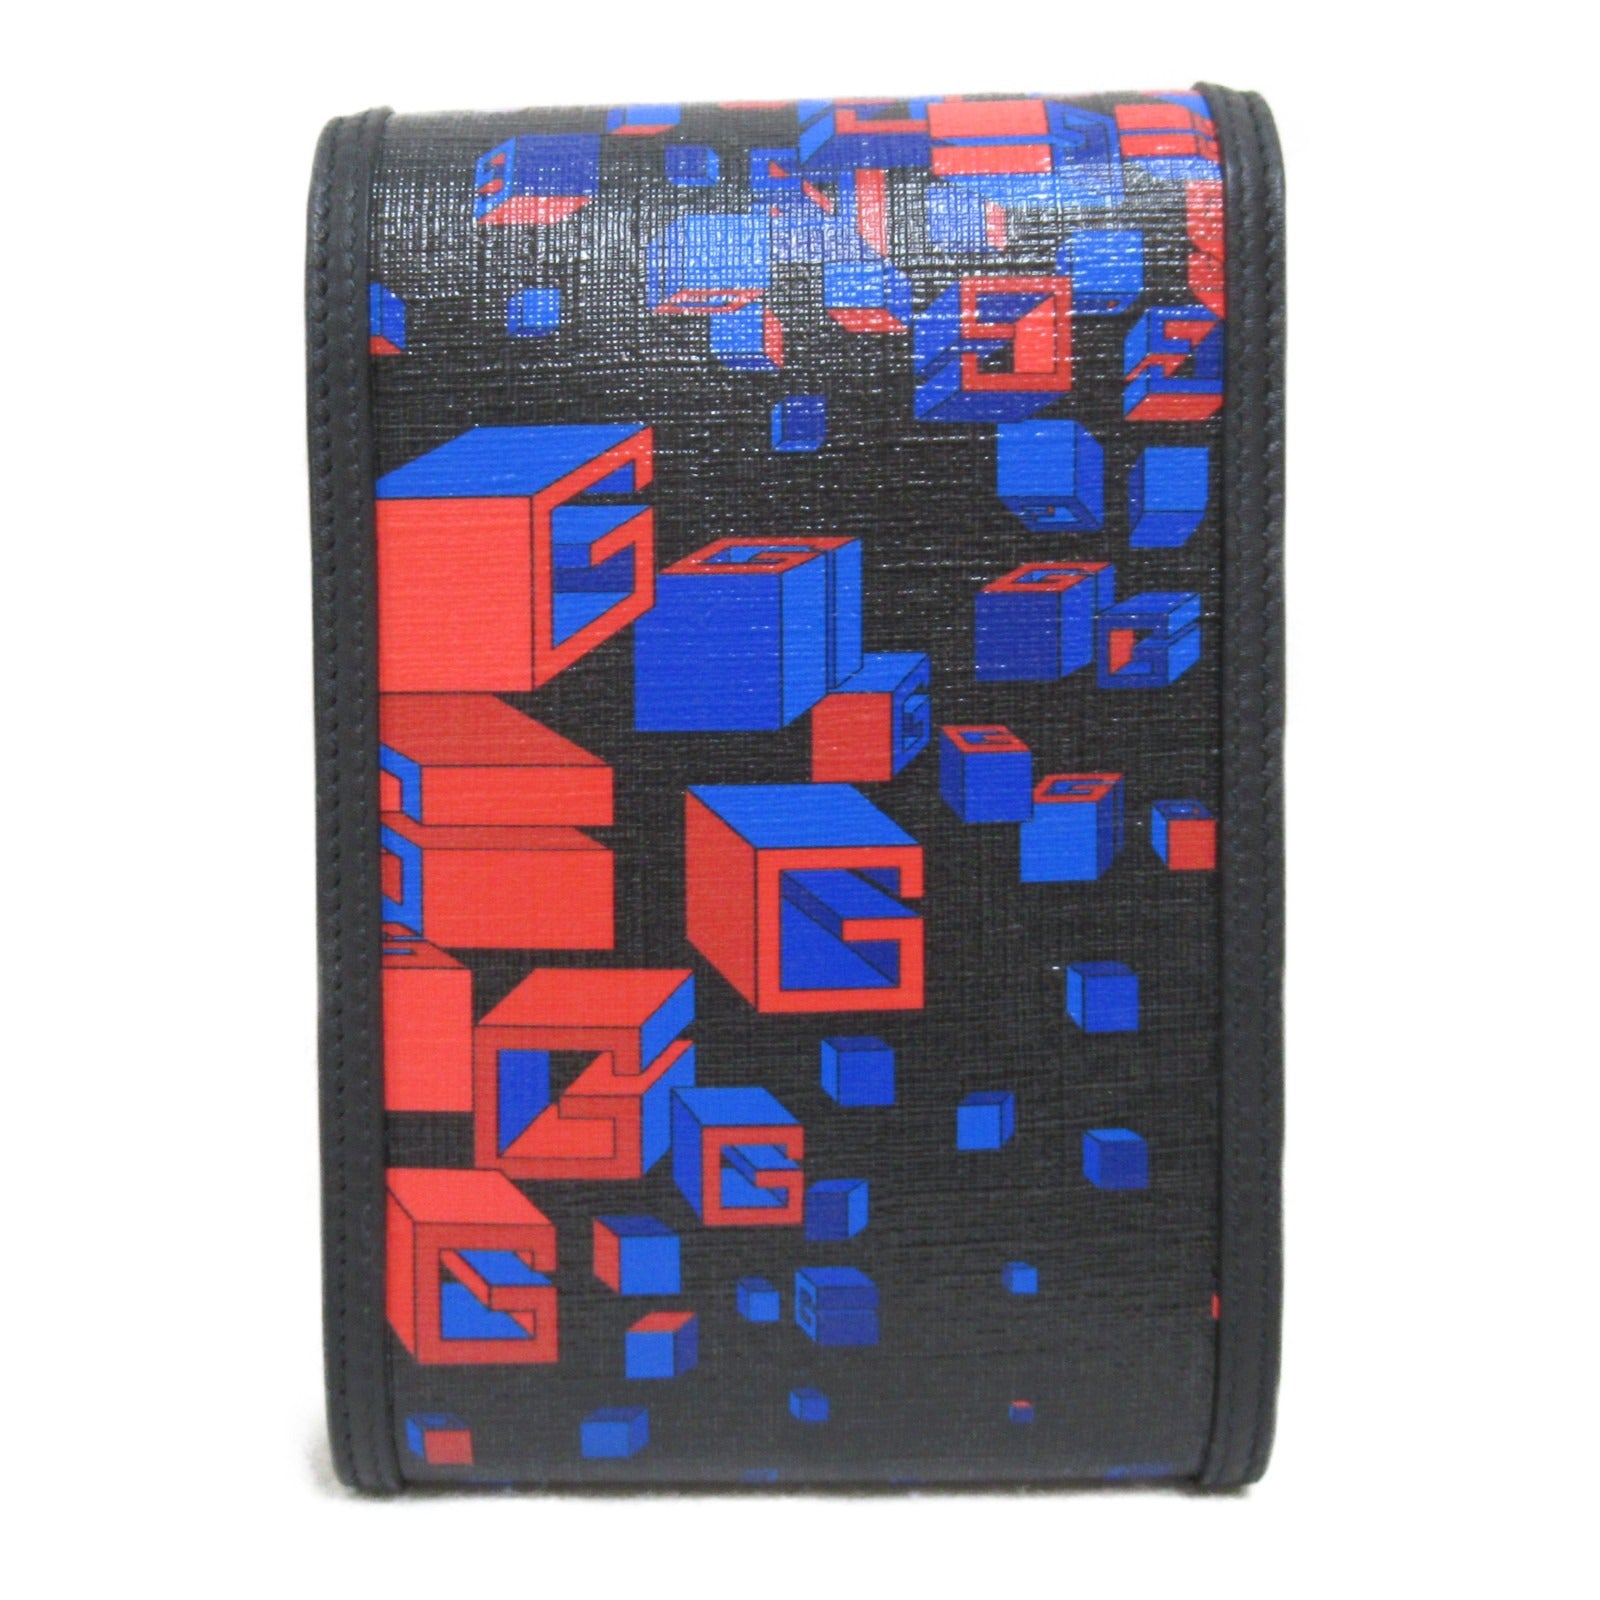 Gucci Gucci Square G-Pace Sder Bag Shoulder Bag PVC Coated Canvas Men  Black / Blue / Red 63766